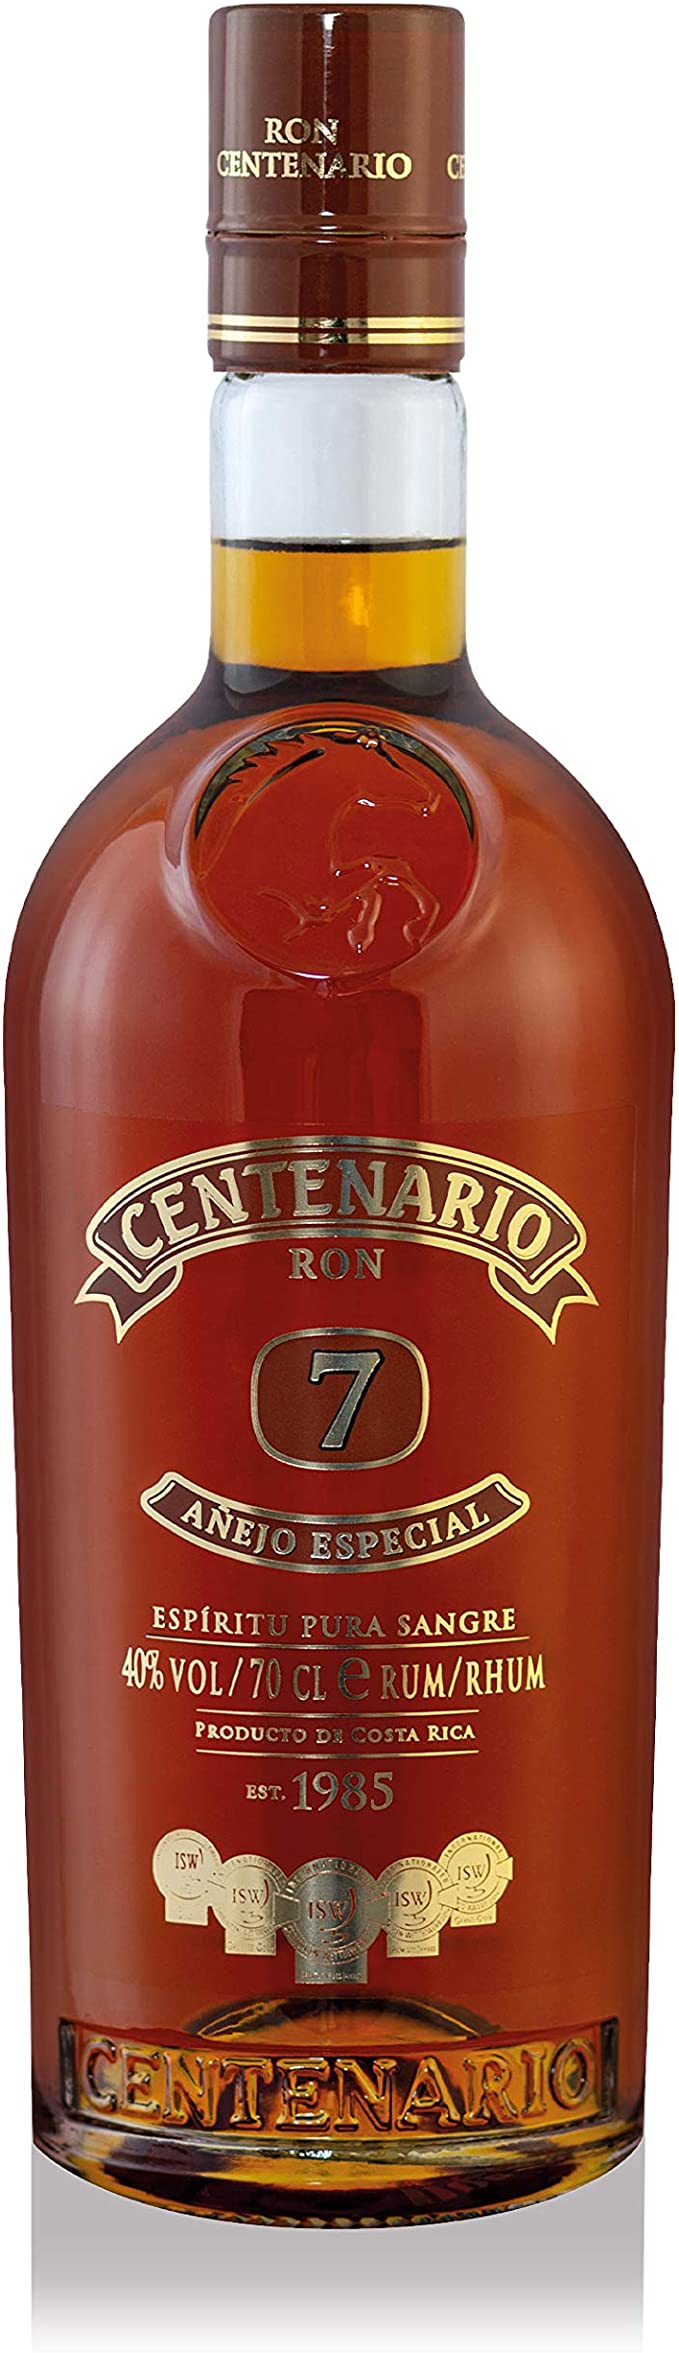 RON CENTENARIO Rhum Centenario Anejo Espicial 7 years | Letzshop | Rum